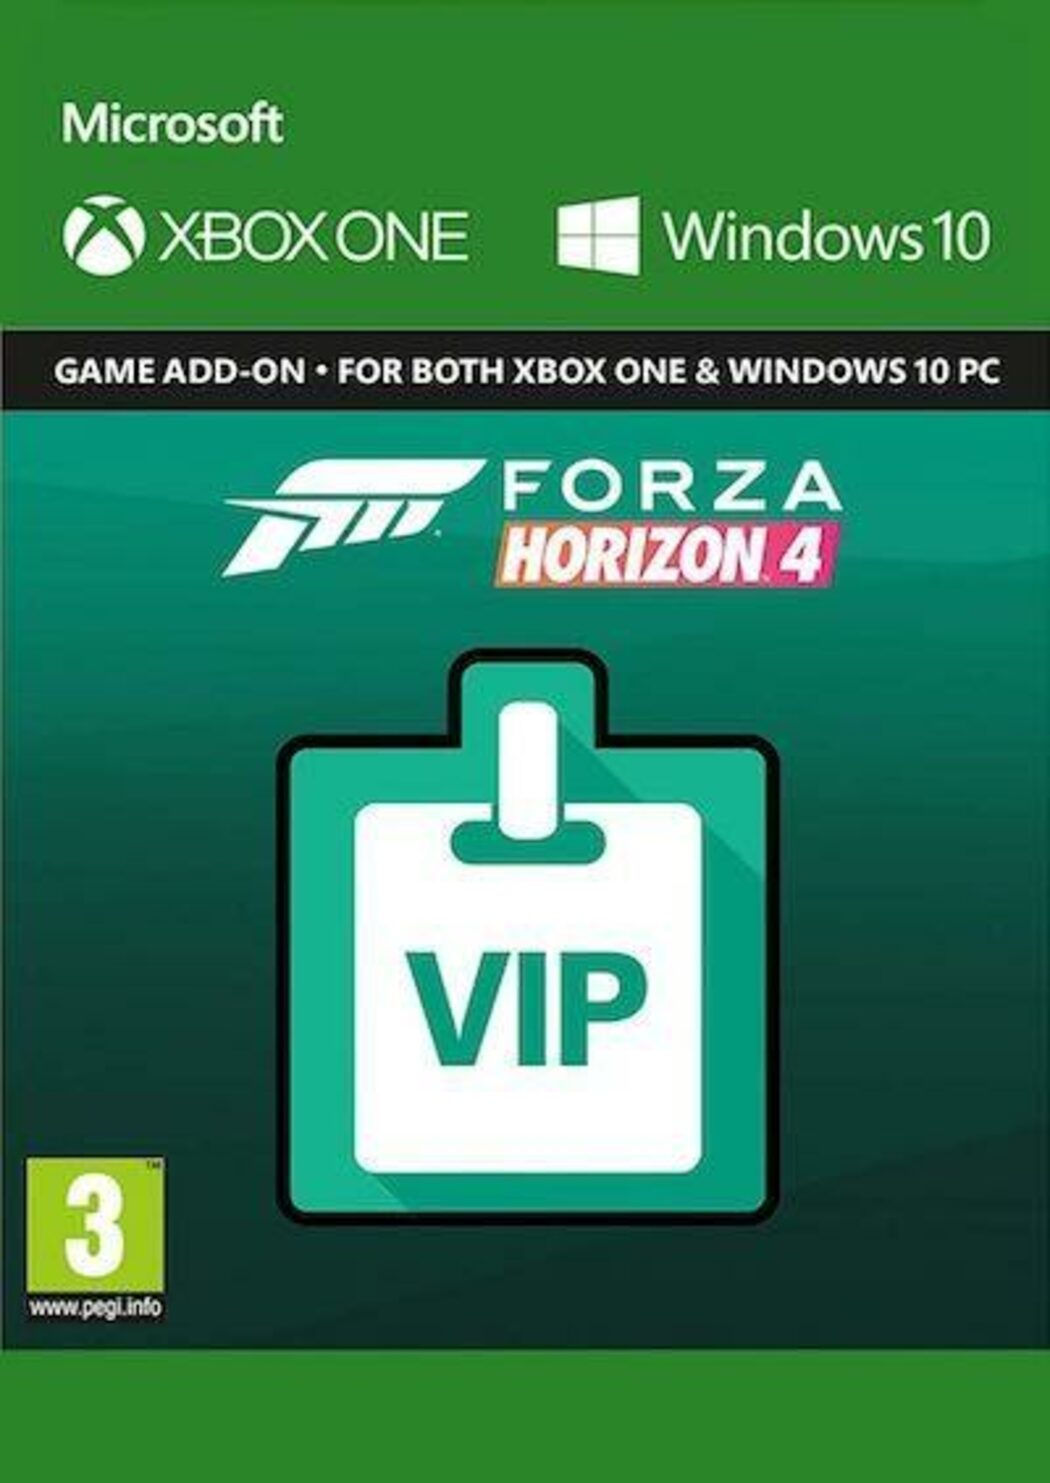 Estos son los requisitos de sistema que necesita Forza Horizon 3 para  Windows 10 y Xbox One